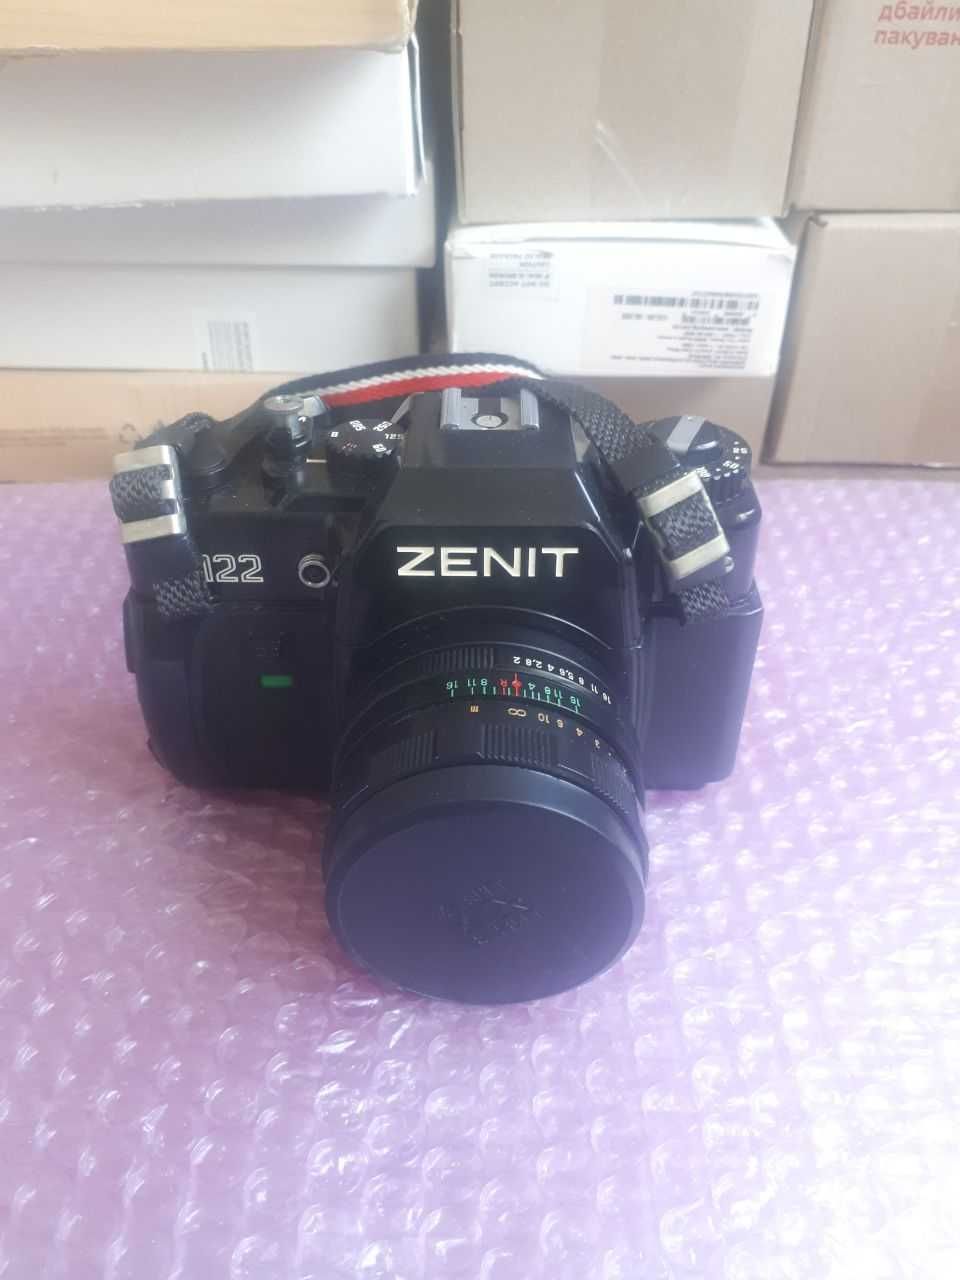 Пленочный фотоаппарат Zenit 122 Helios-44m 2/58